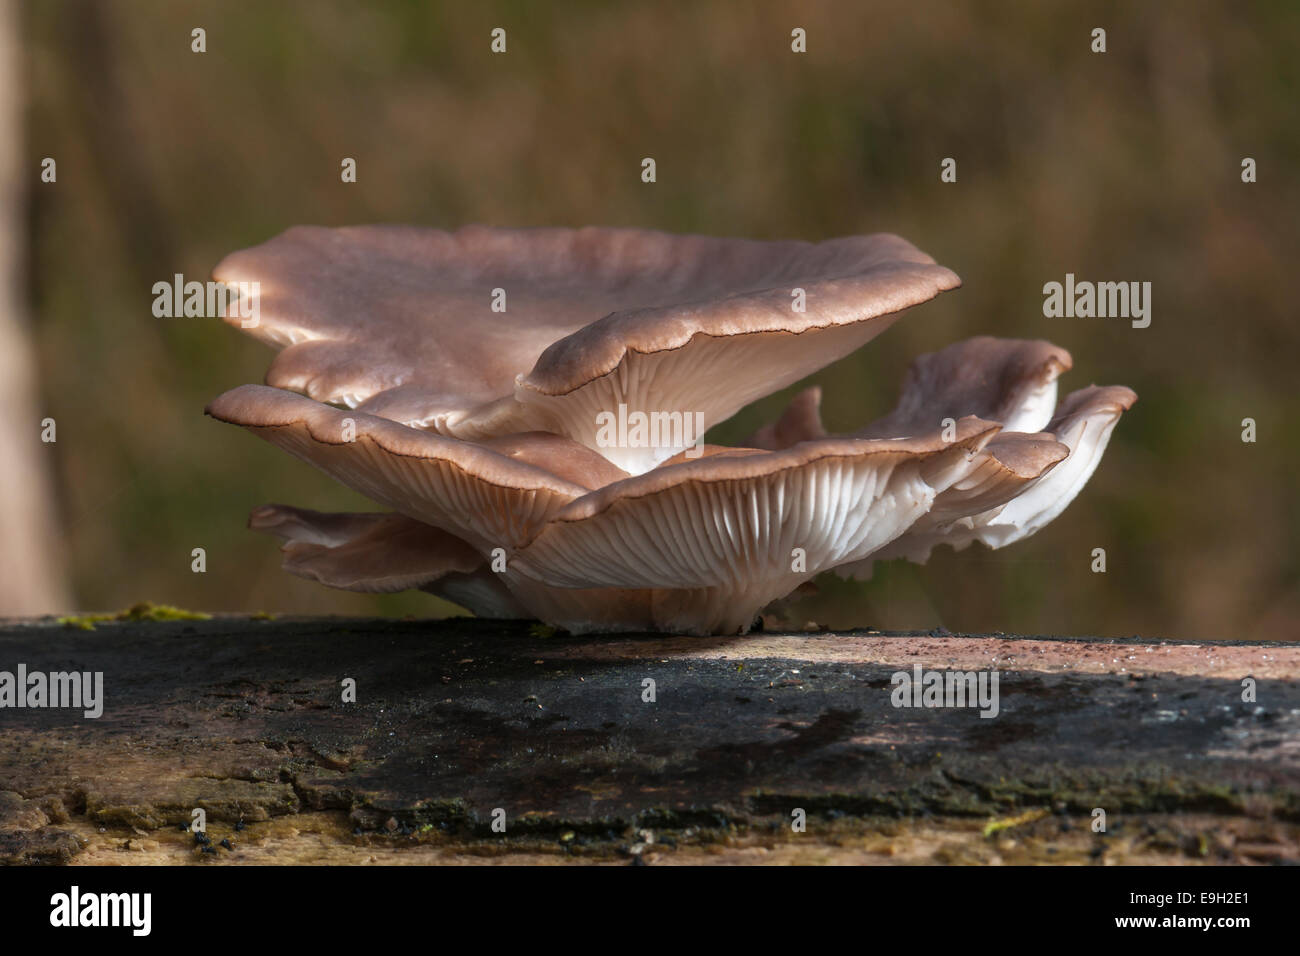 Oyster Mushroom (Pleurotus ostreatus), edible mushroom, Hesse, Germany Stock Photo